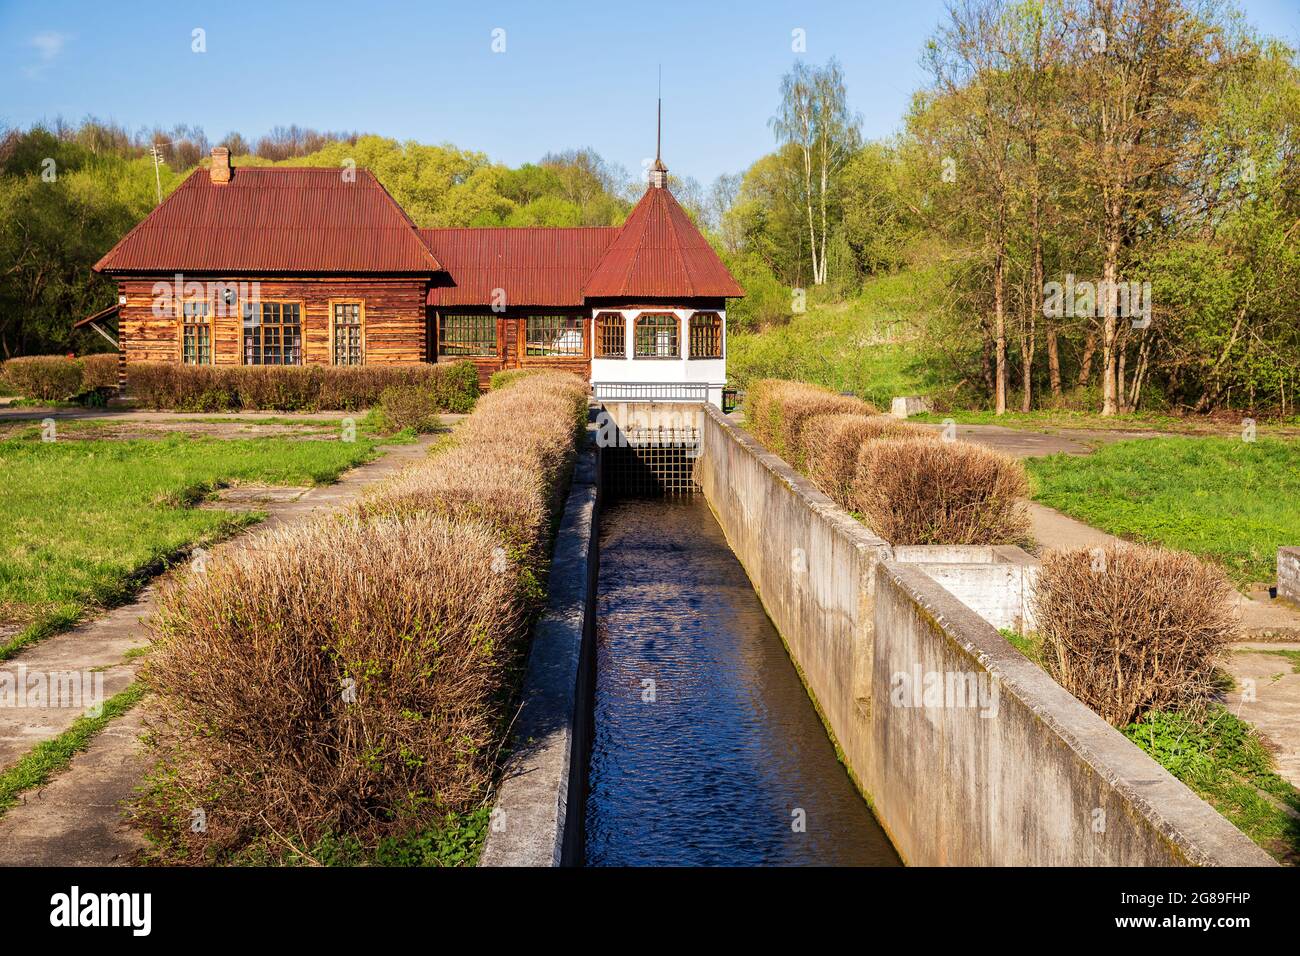 Vecchia centrale idroelettrica rurale, una delle prime centrali idroelettriche rurali dell'URSS. Yaropolets, regione di Mosca, Russia Foto Stock